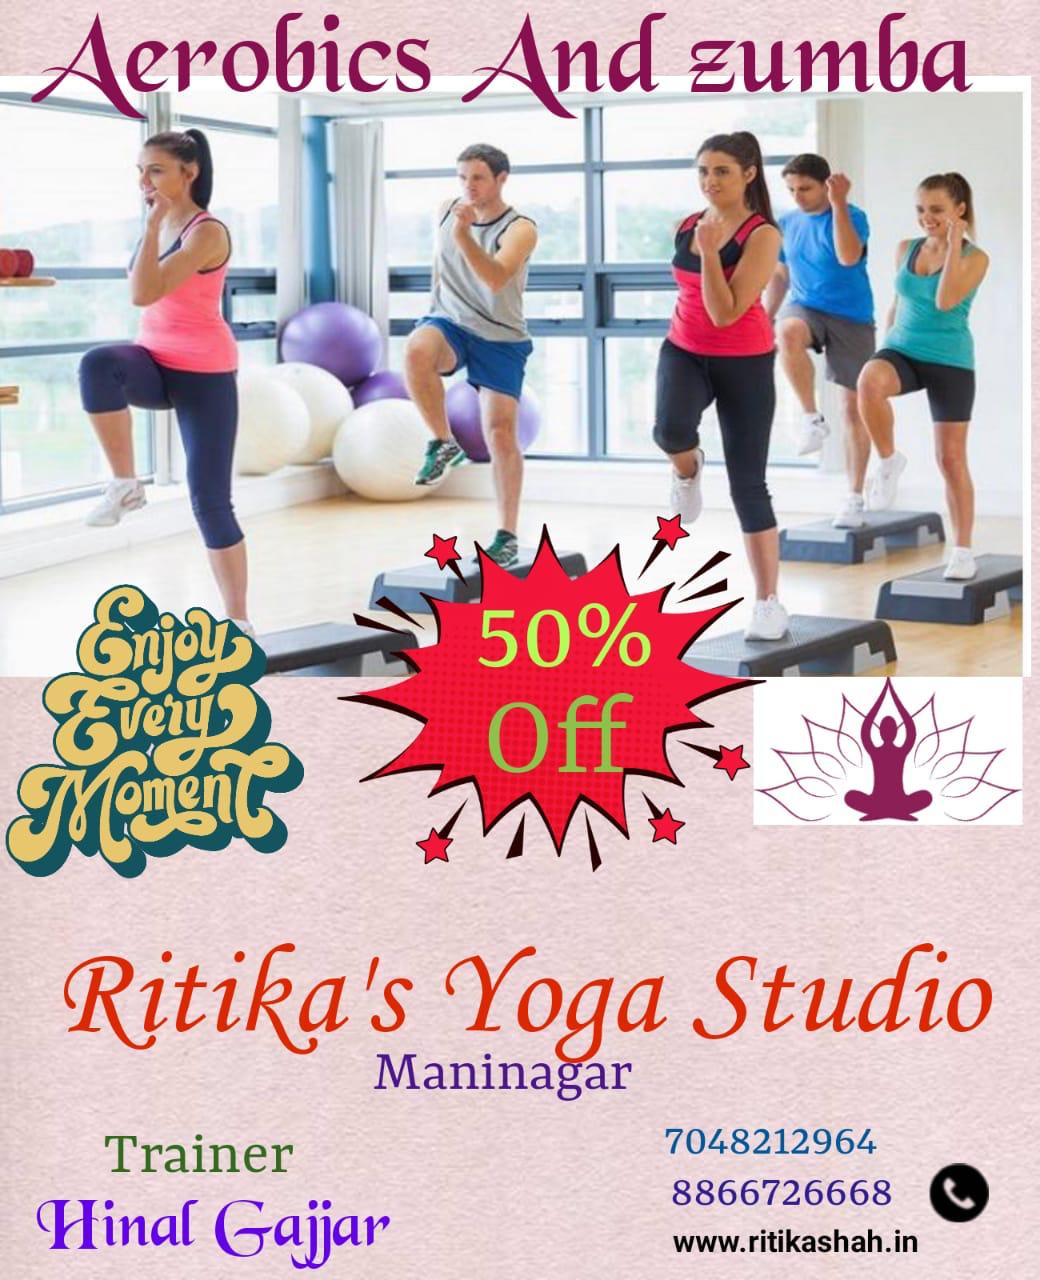 Ahmedabad-Maninagar-Ritikas-Yoga-Studio_295_Mjk1_ODk1Mw